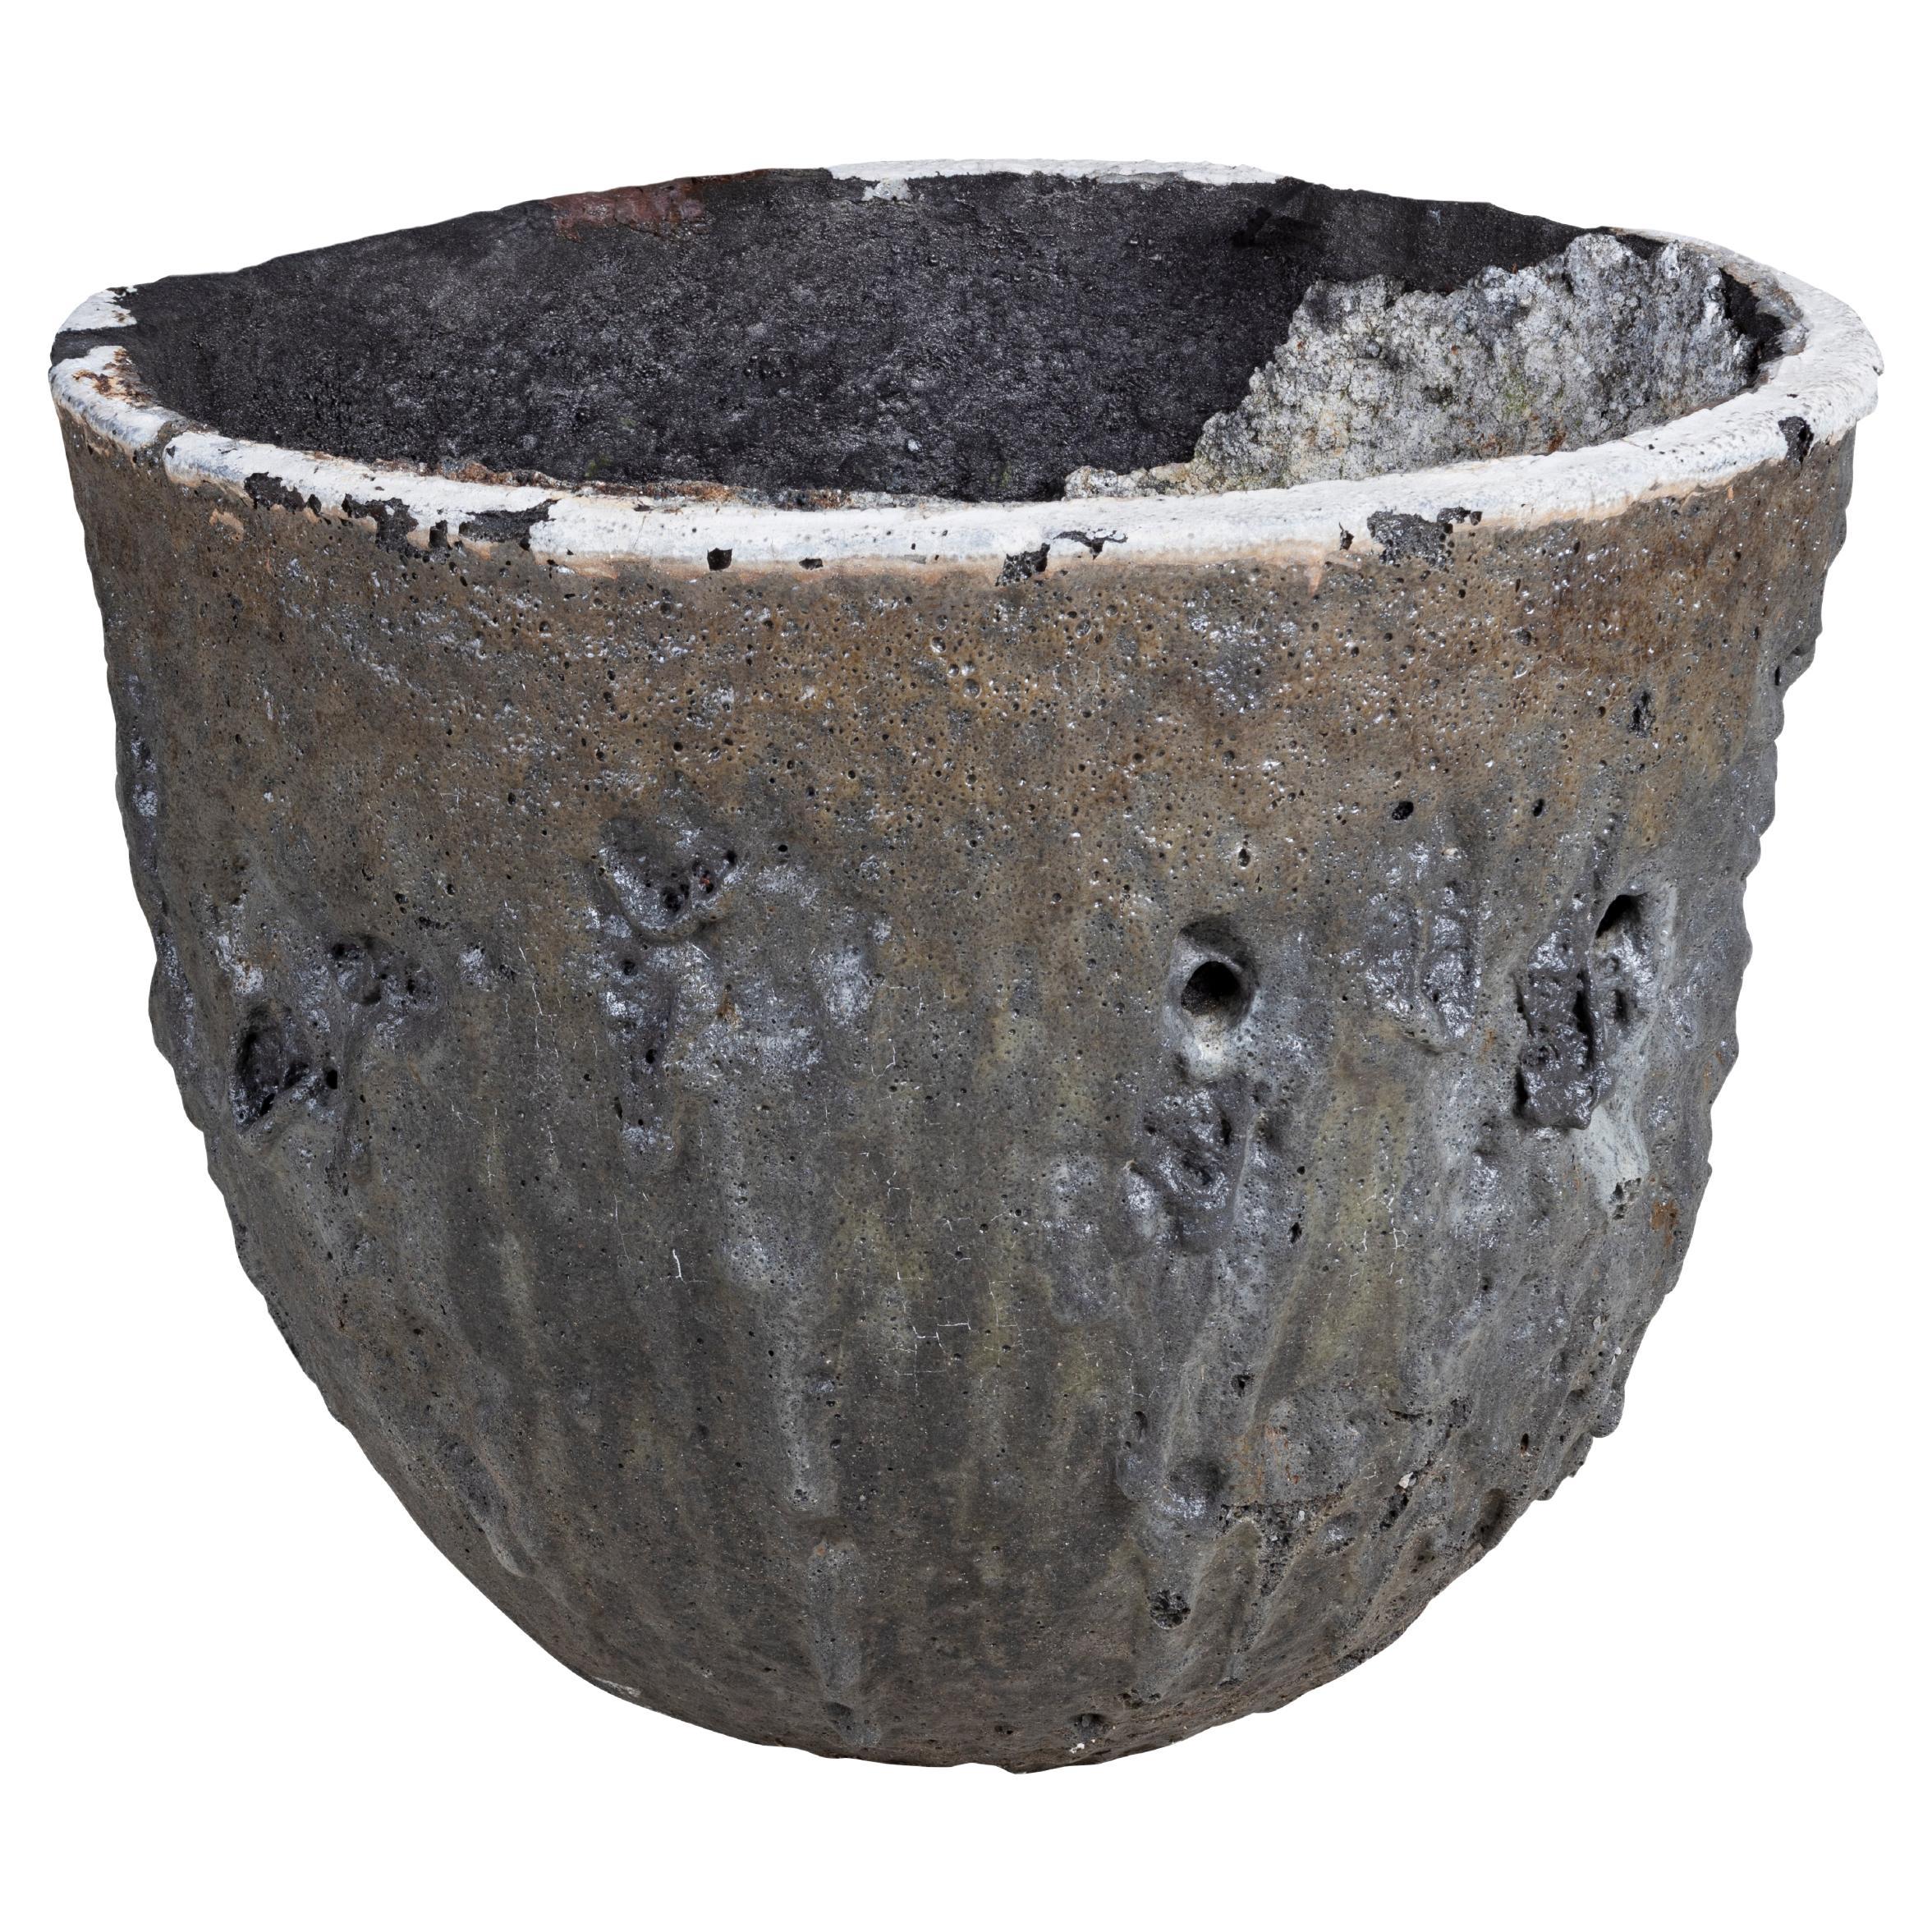 Heavily Weathered Vintage Smelting Pot